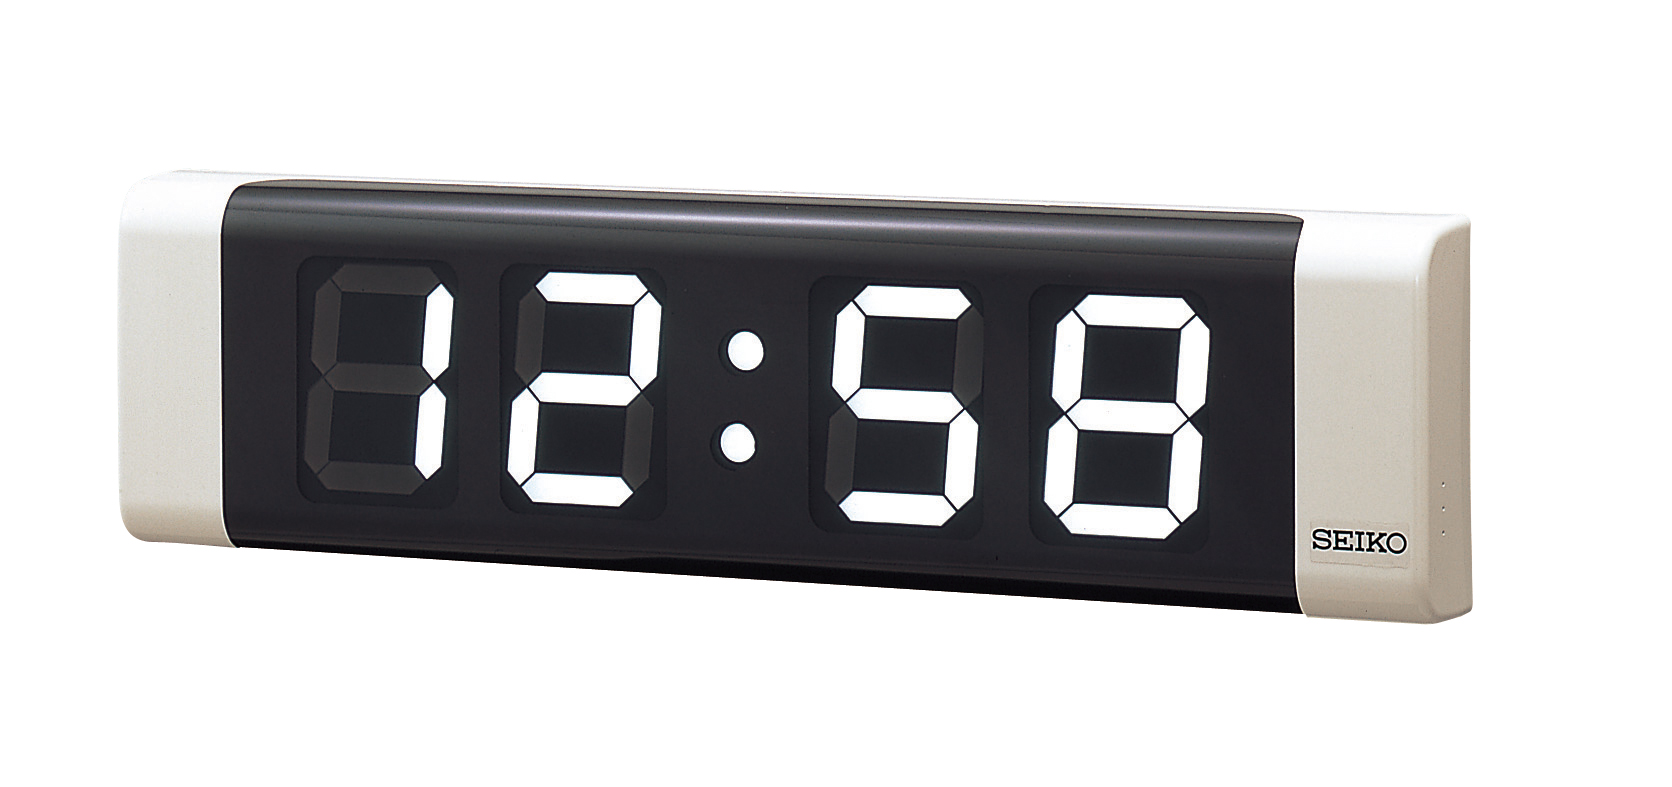 Digital Clock (Independent・Indoor)